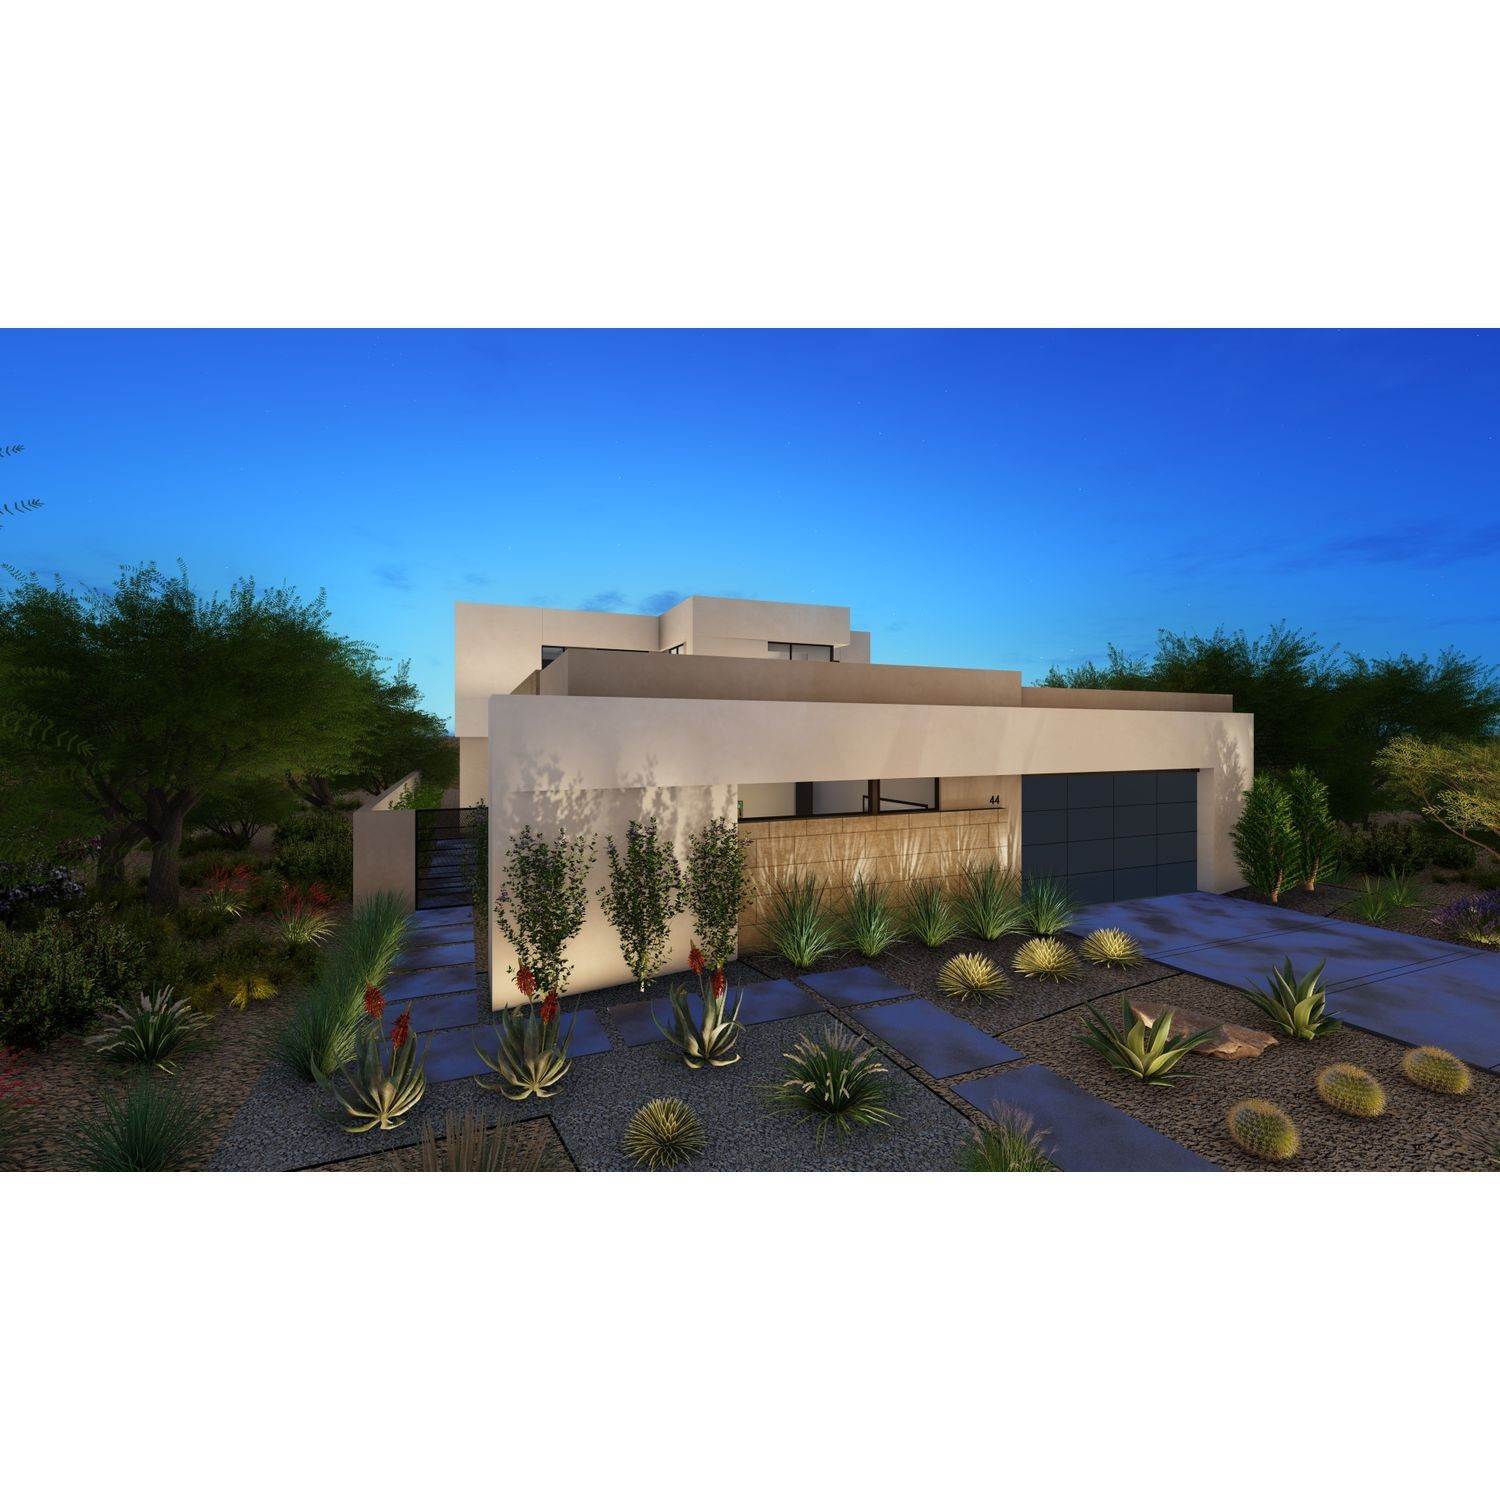 6. Strata xây dựng tại 2030 Lake Las Vegas Pkwy Henderson, Nv, Henderson, NV 89011